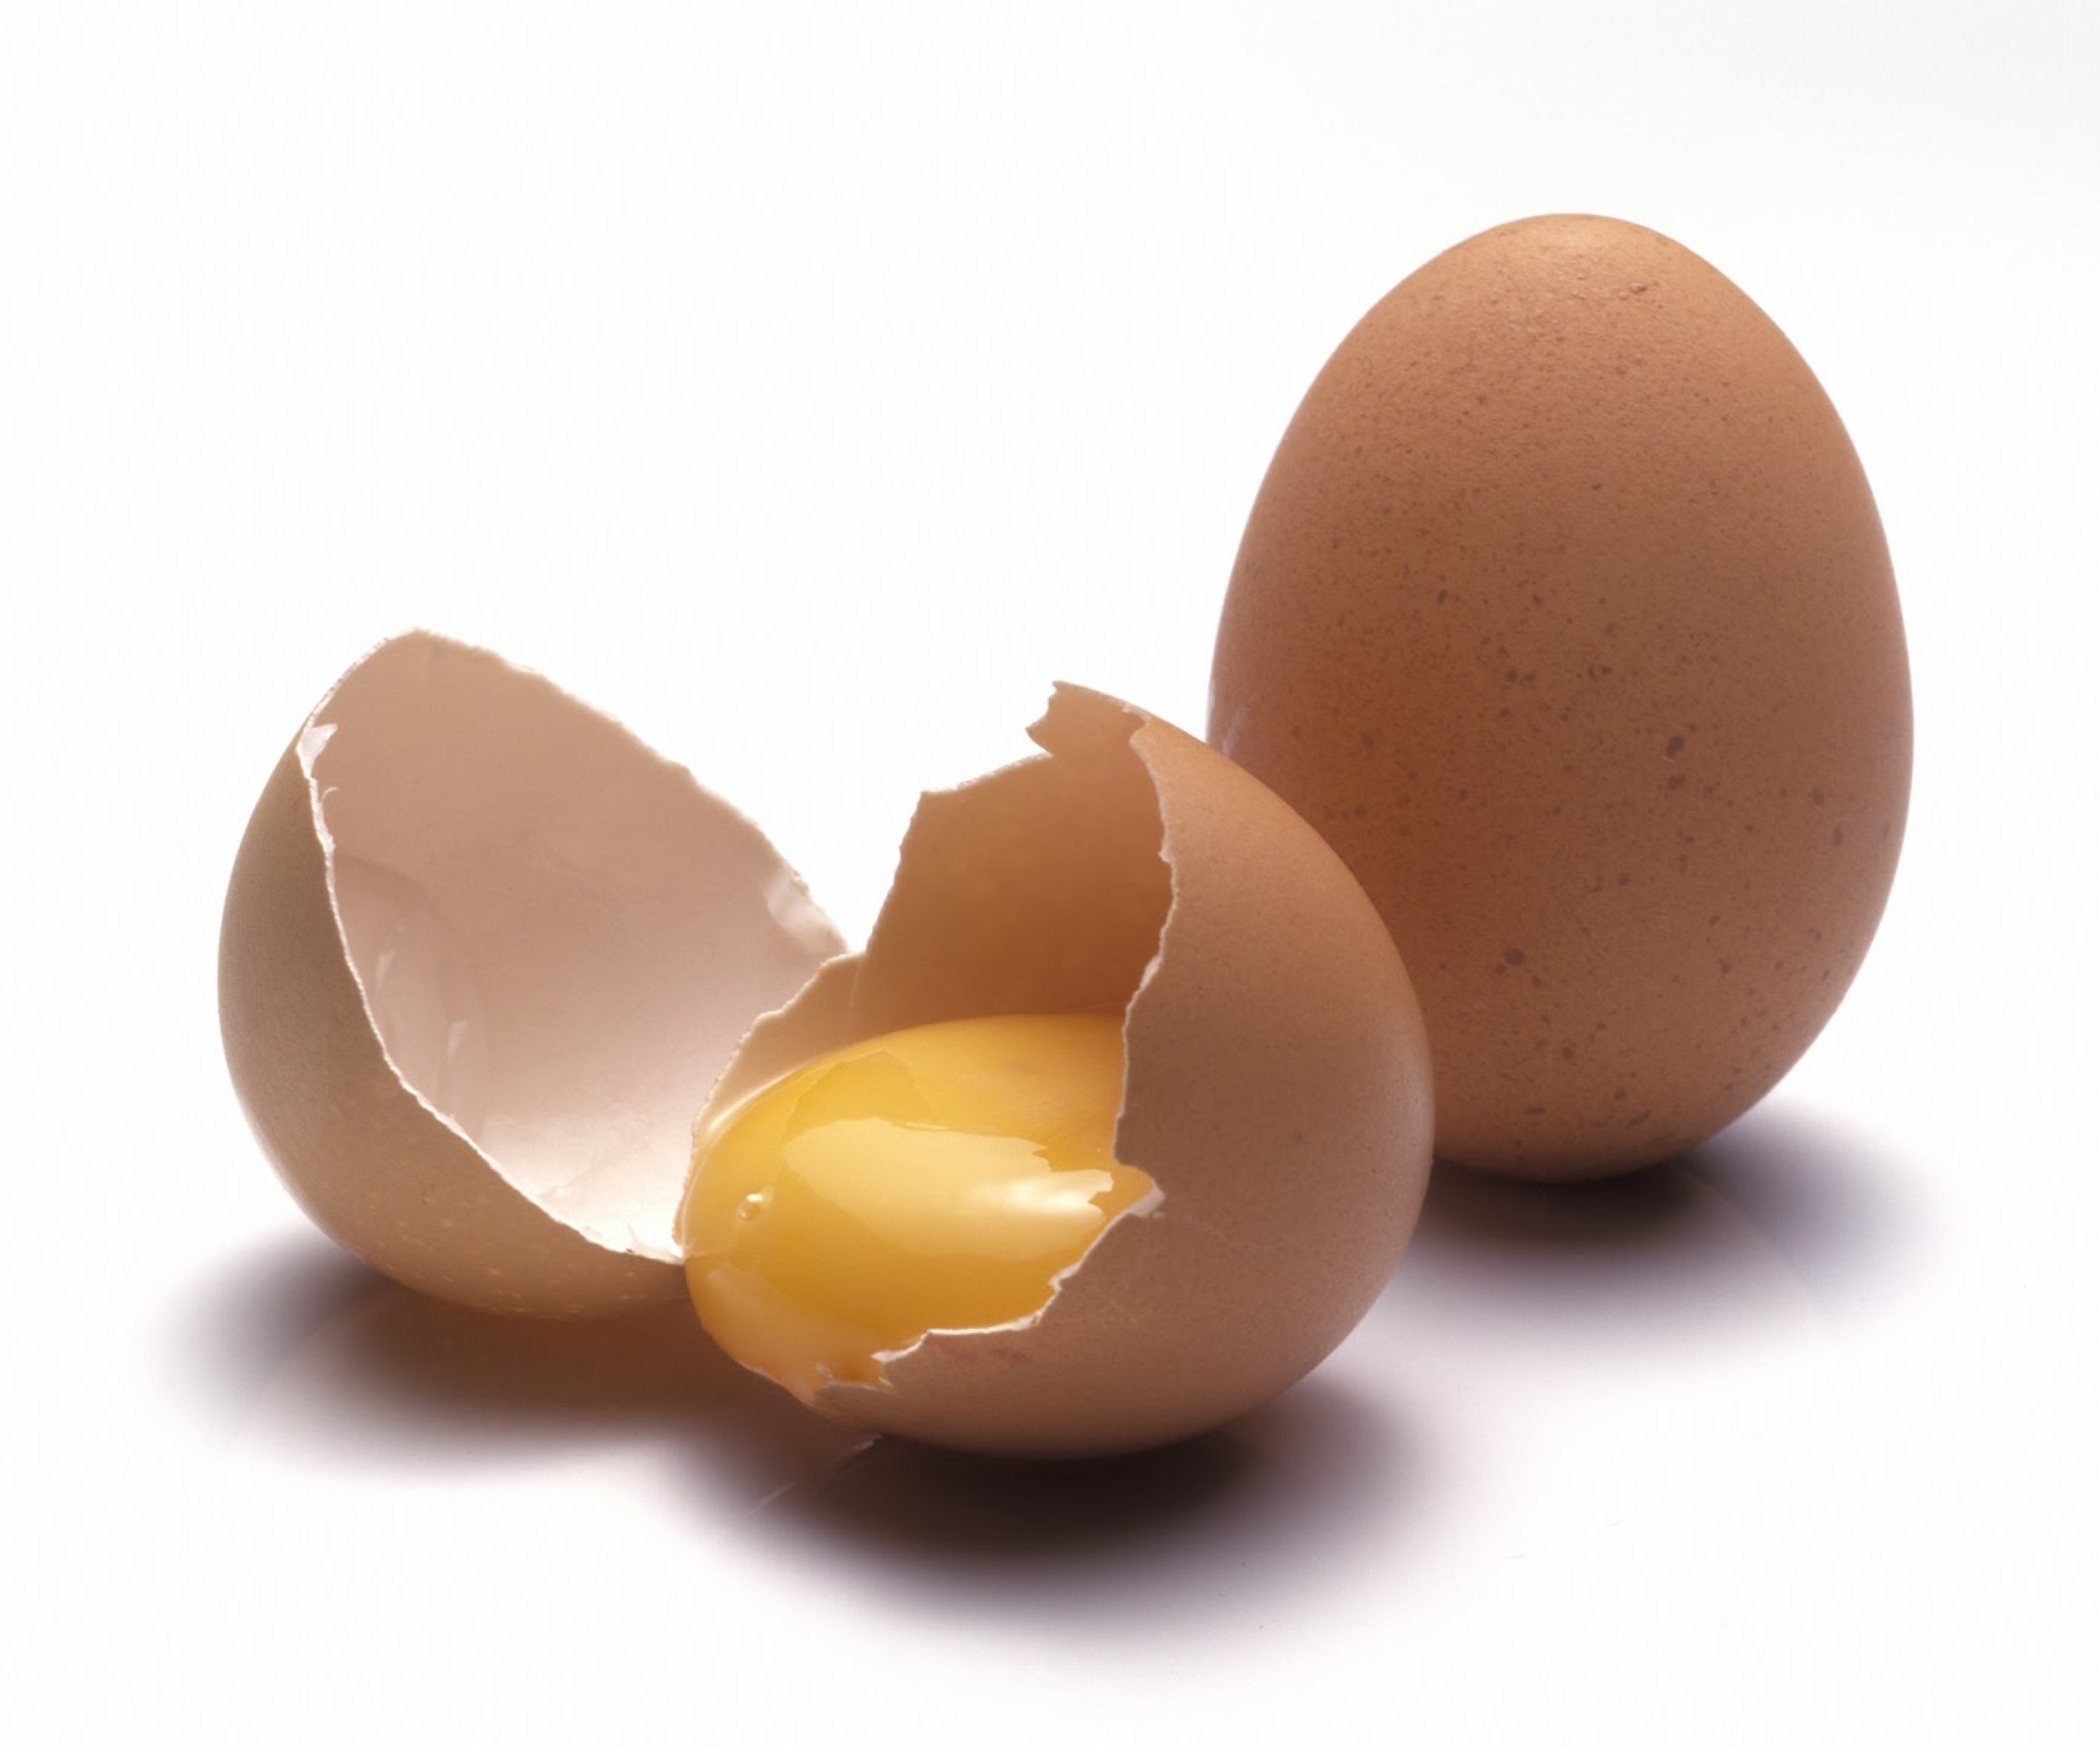 Миф о разбивании яйца одной рукой